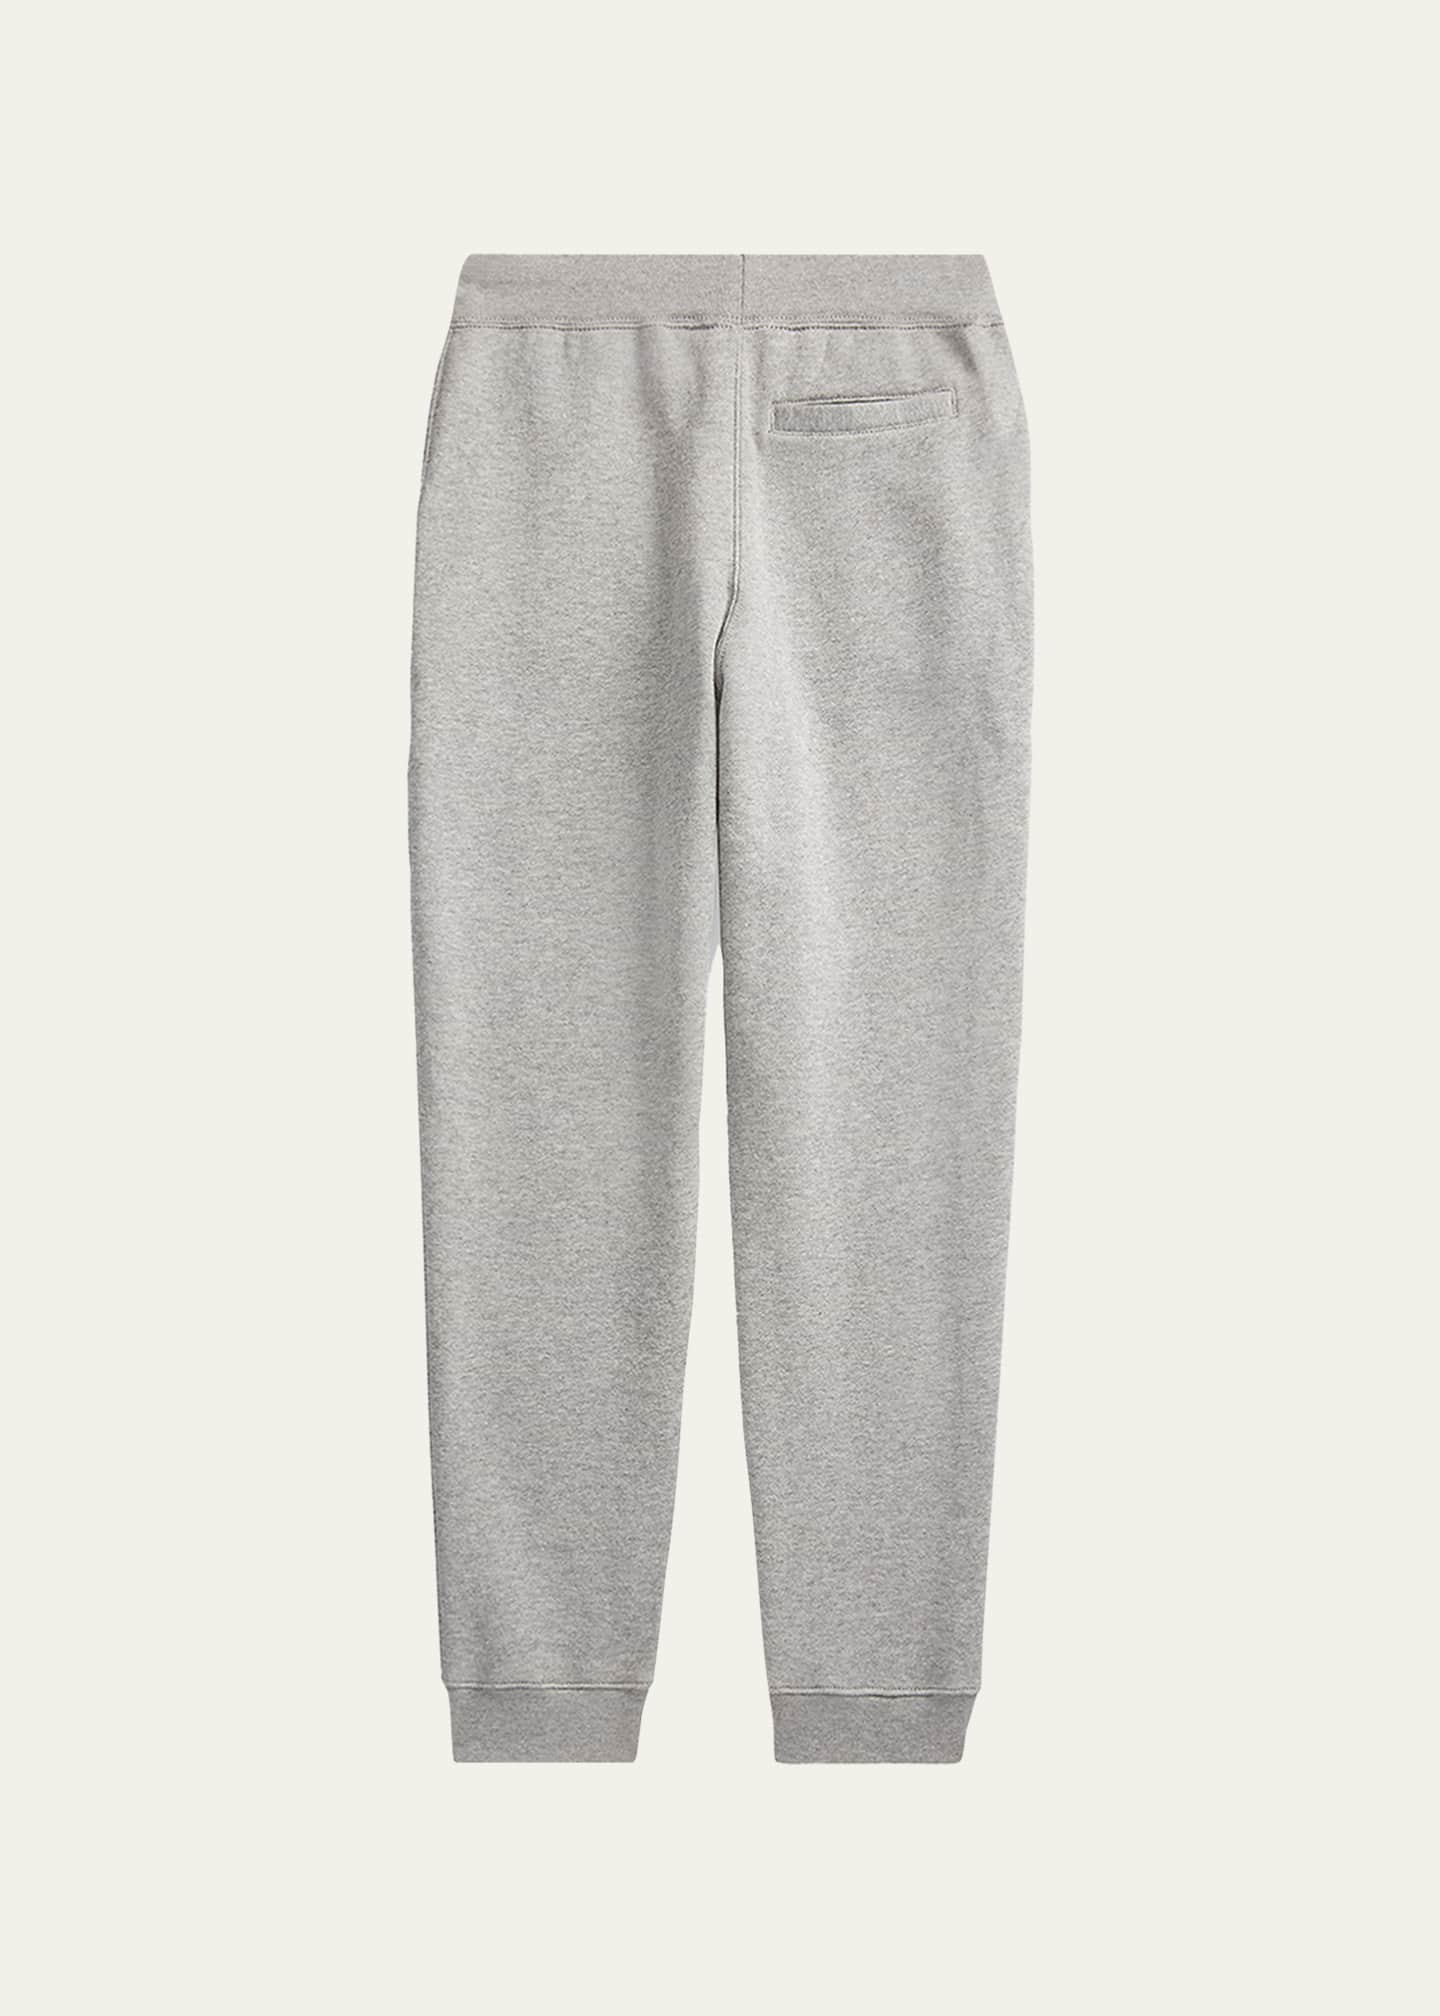 Ralph Lauren Childrenswear Boy's Fleece Jogger Pants, Size S-XL - Bergdorf  Goodman